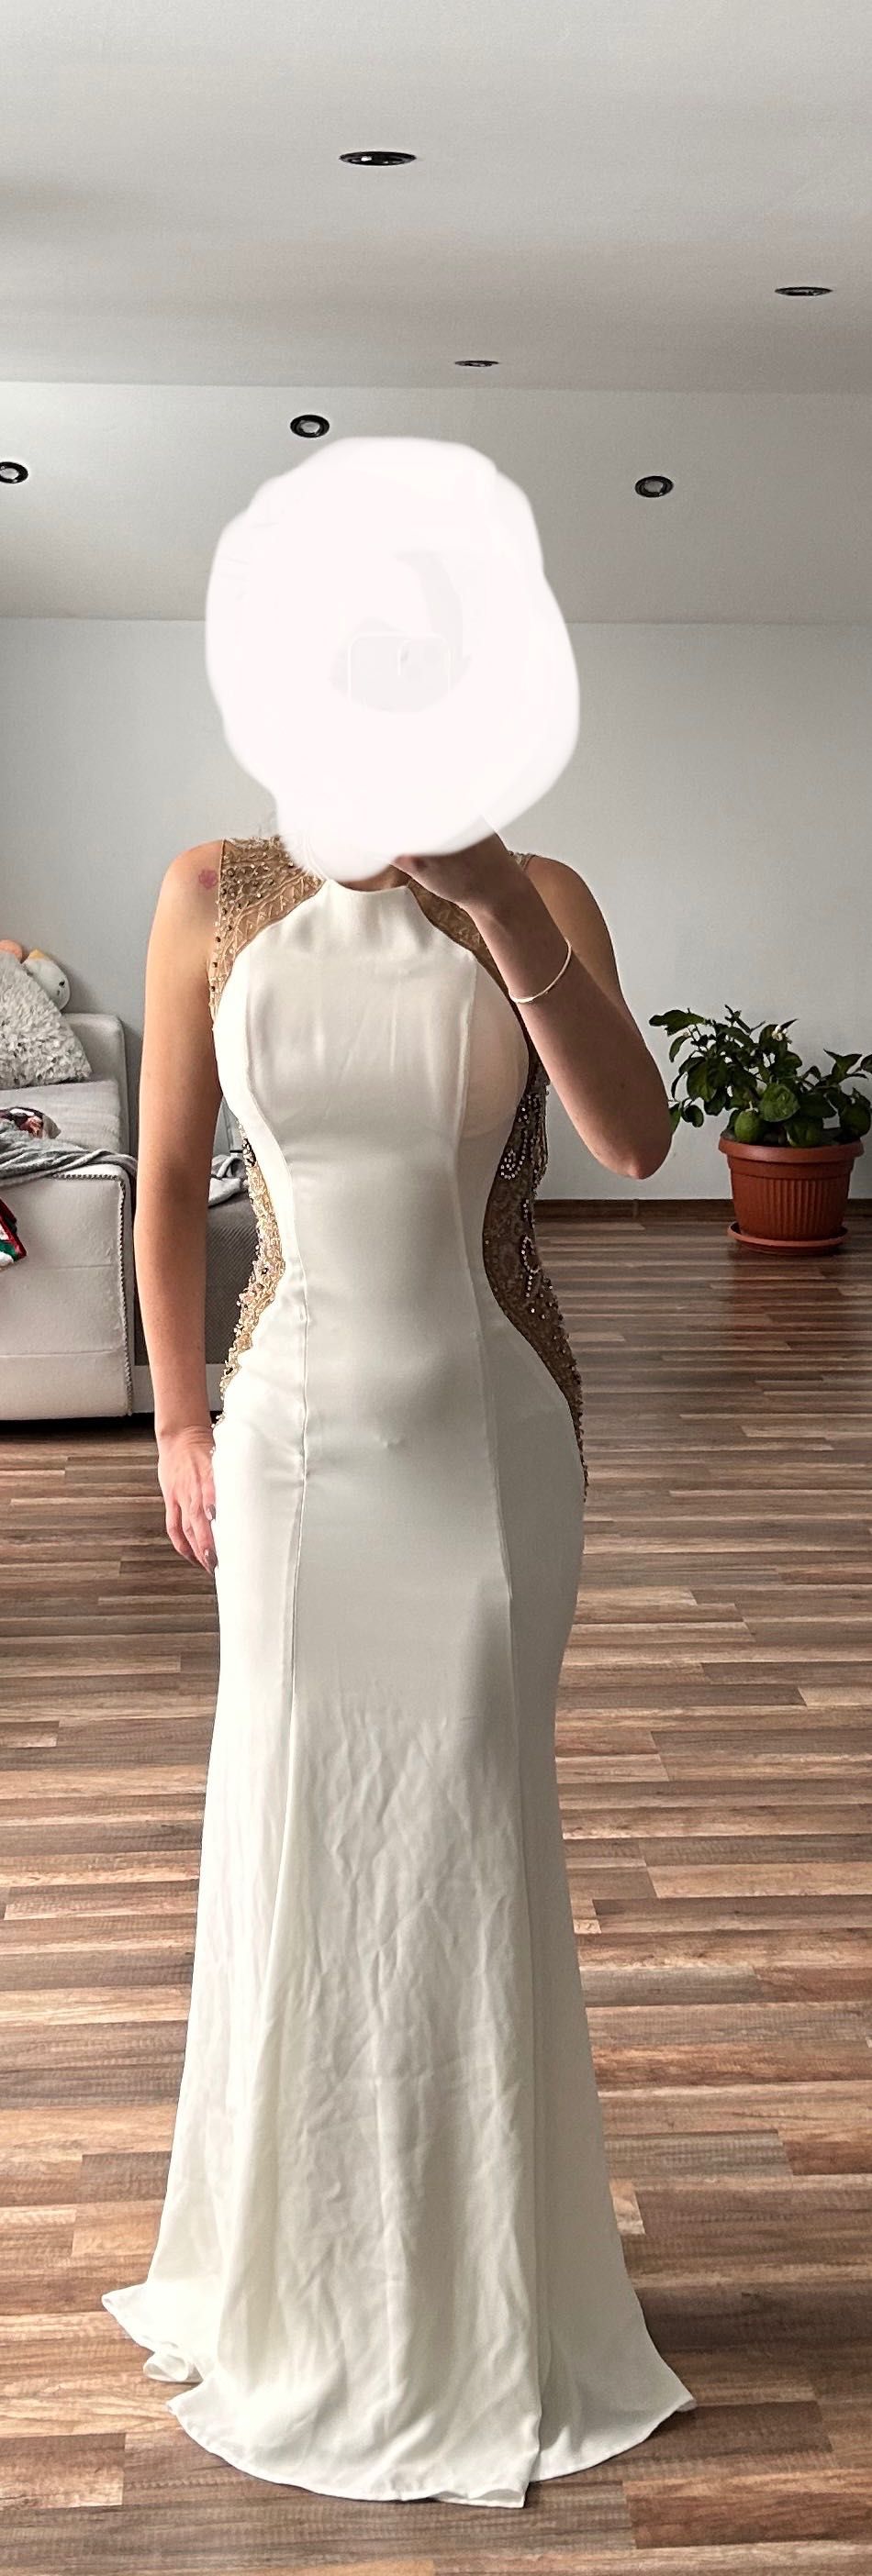 Официална бяла рокля със златни ръчно пришити камъчета.